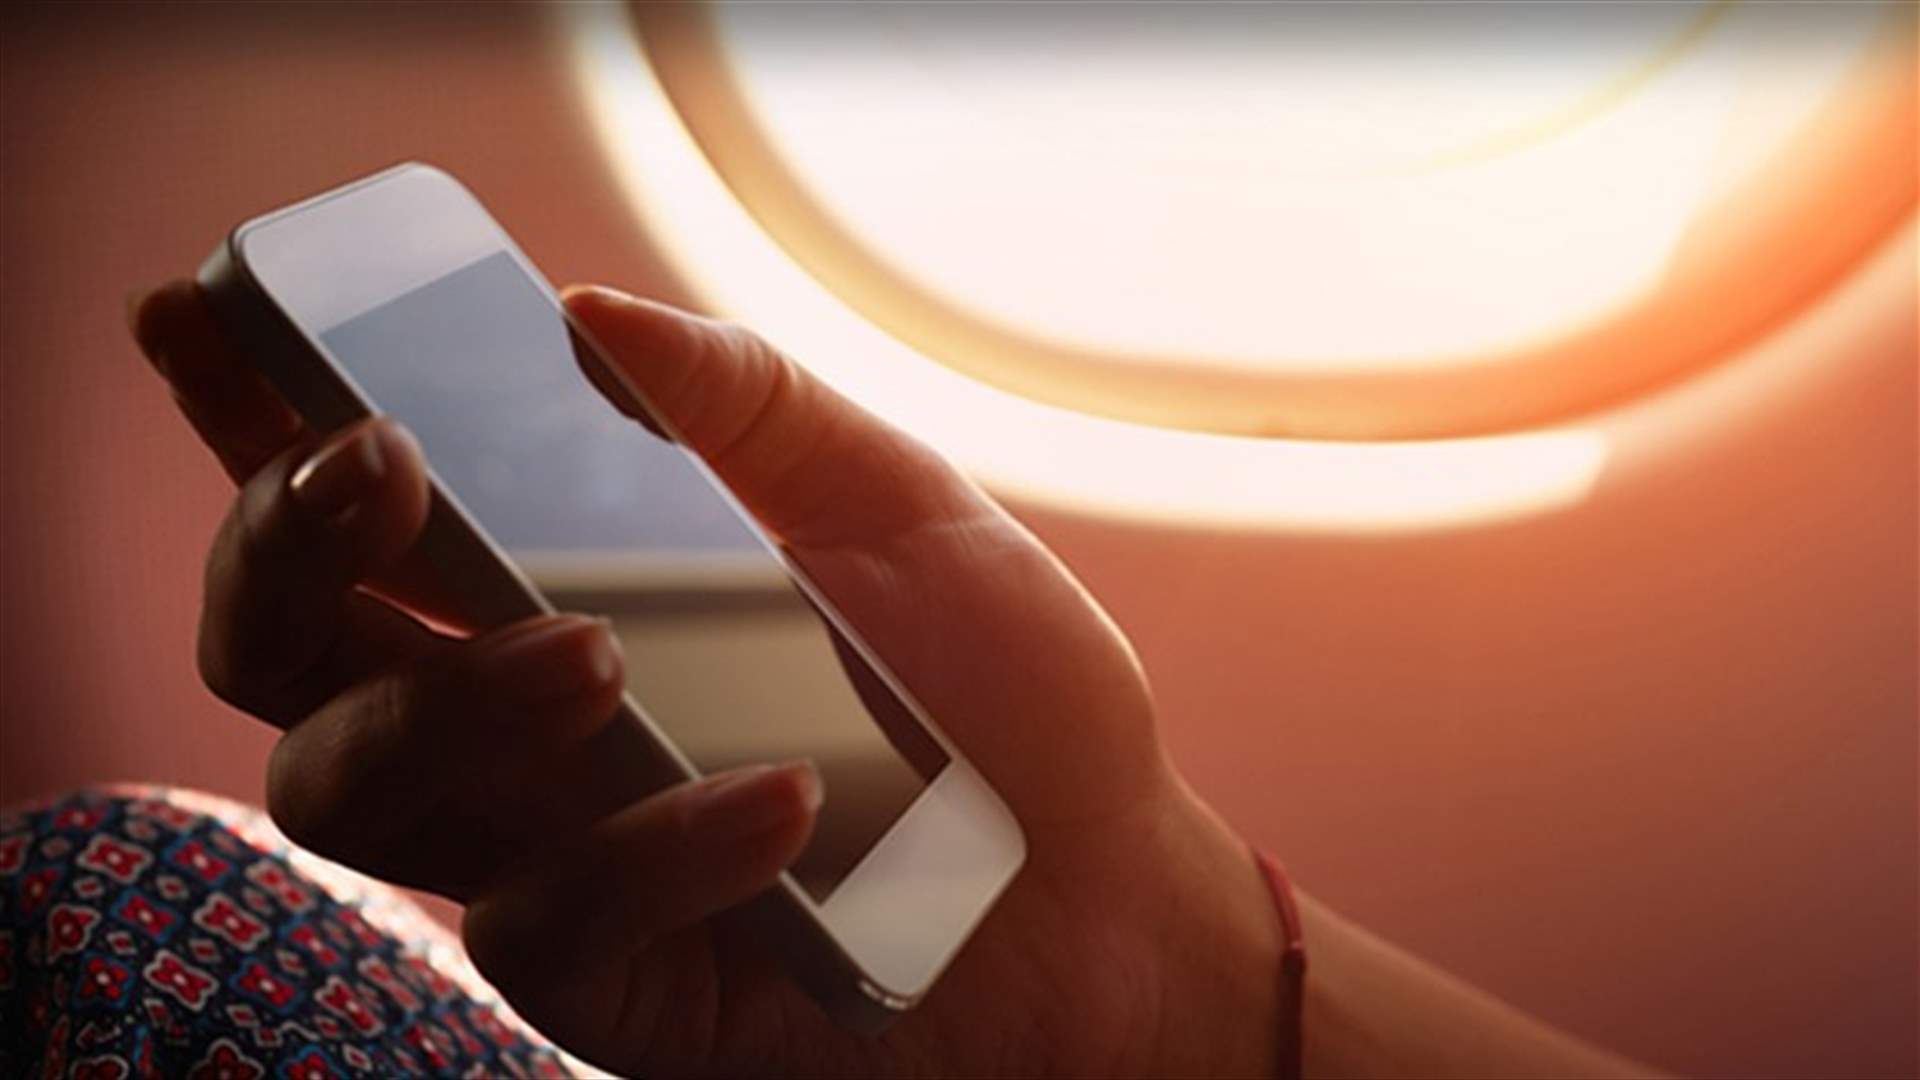 ماذا يحصل إن لم نحوّل الهاتف إلى وضع الطيران خلال السفر؟